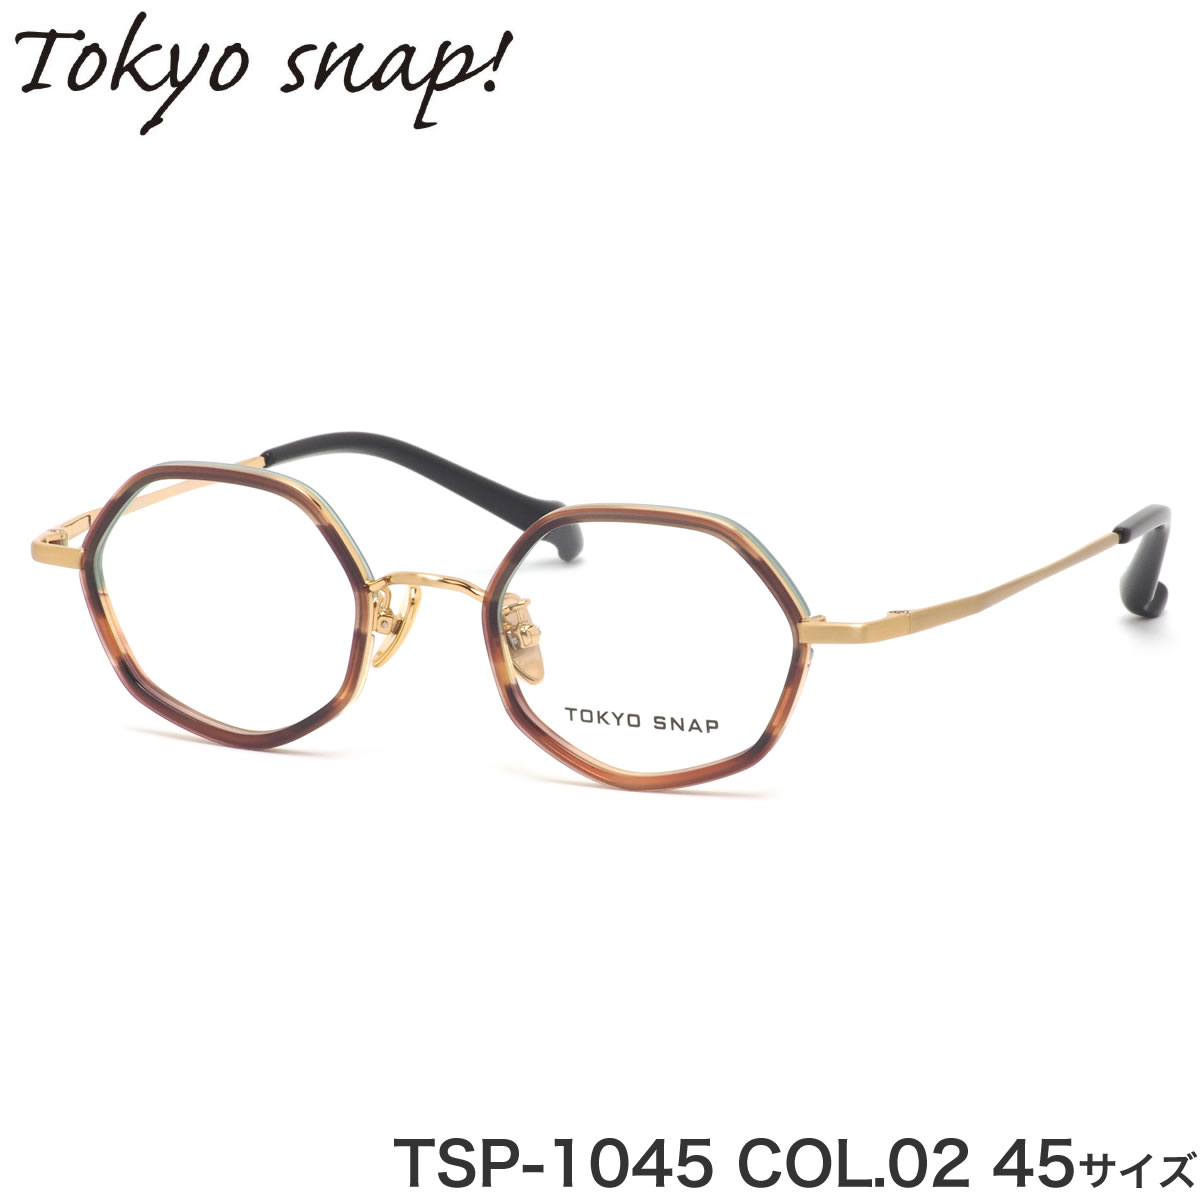 トウキョウスナップ 東京スナップ TOKYO SNAP メガネ TSP-1045 02 45 